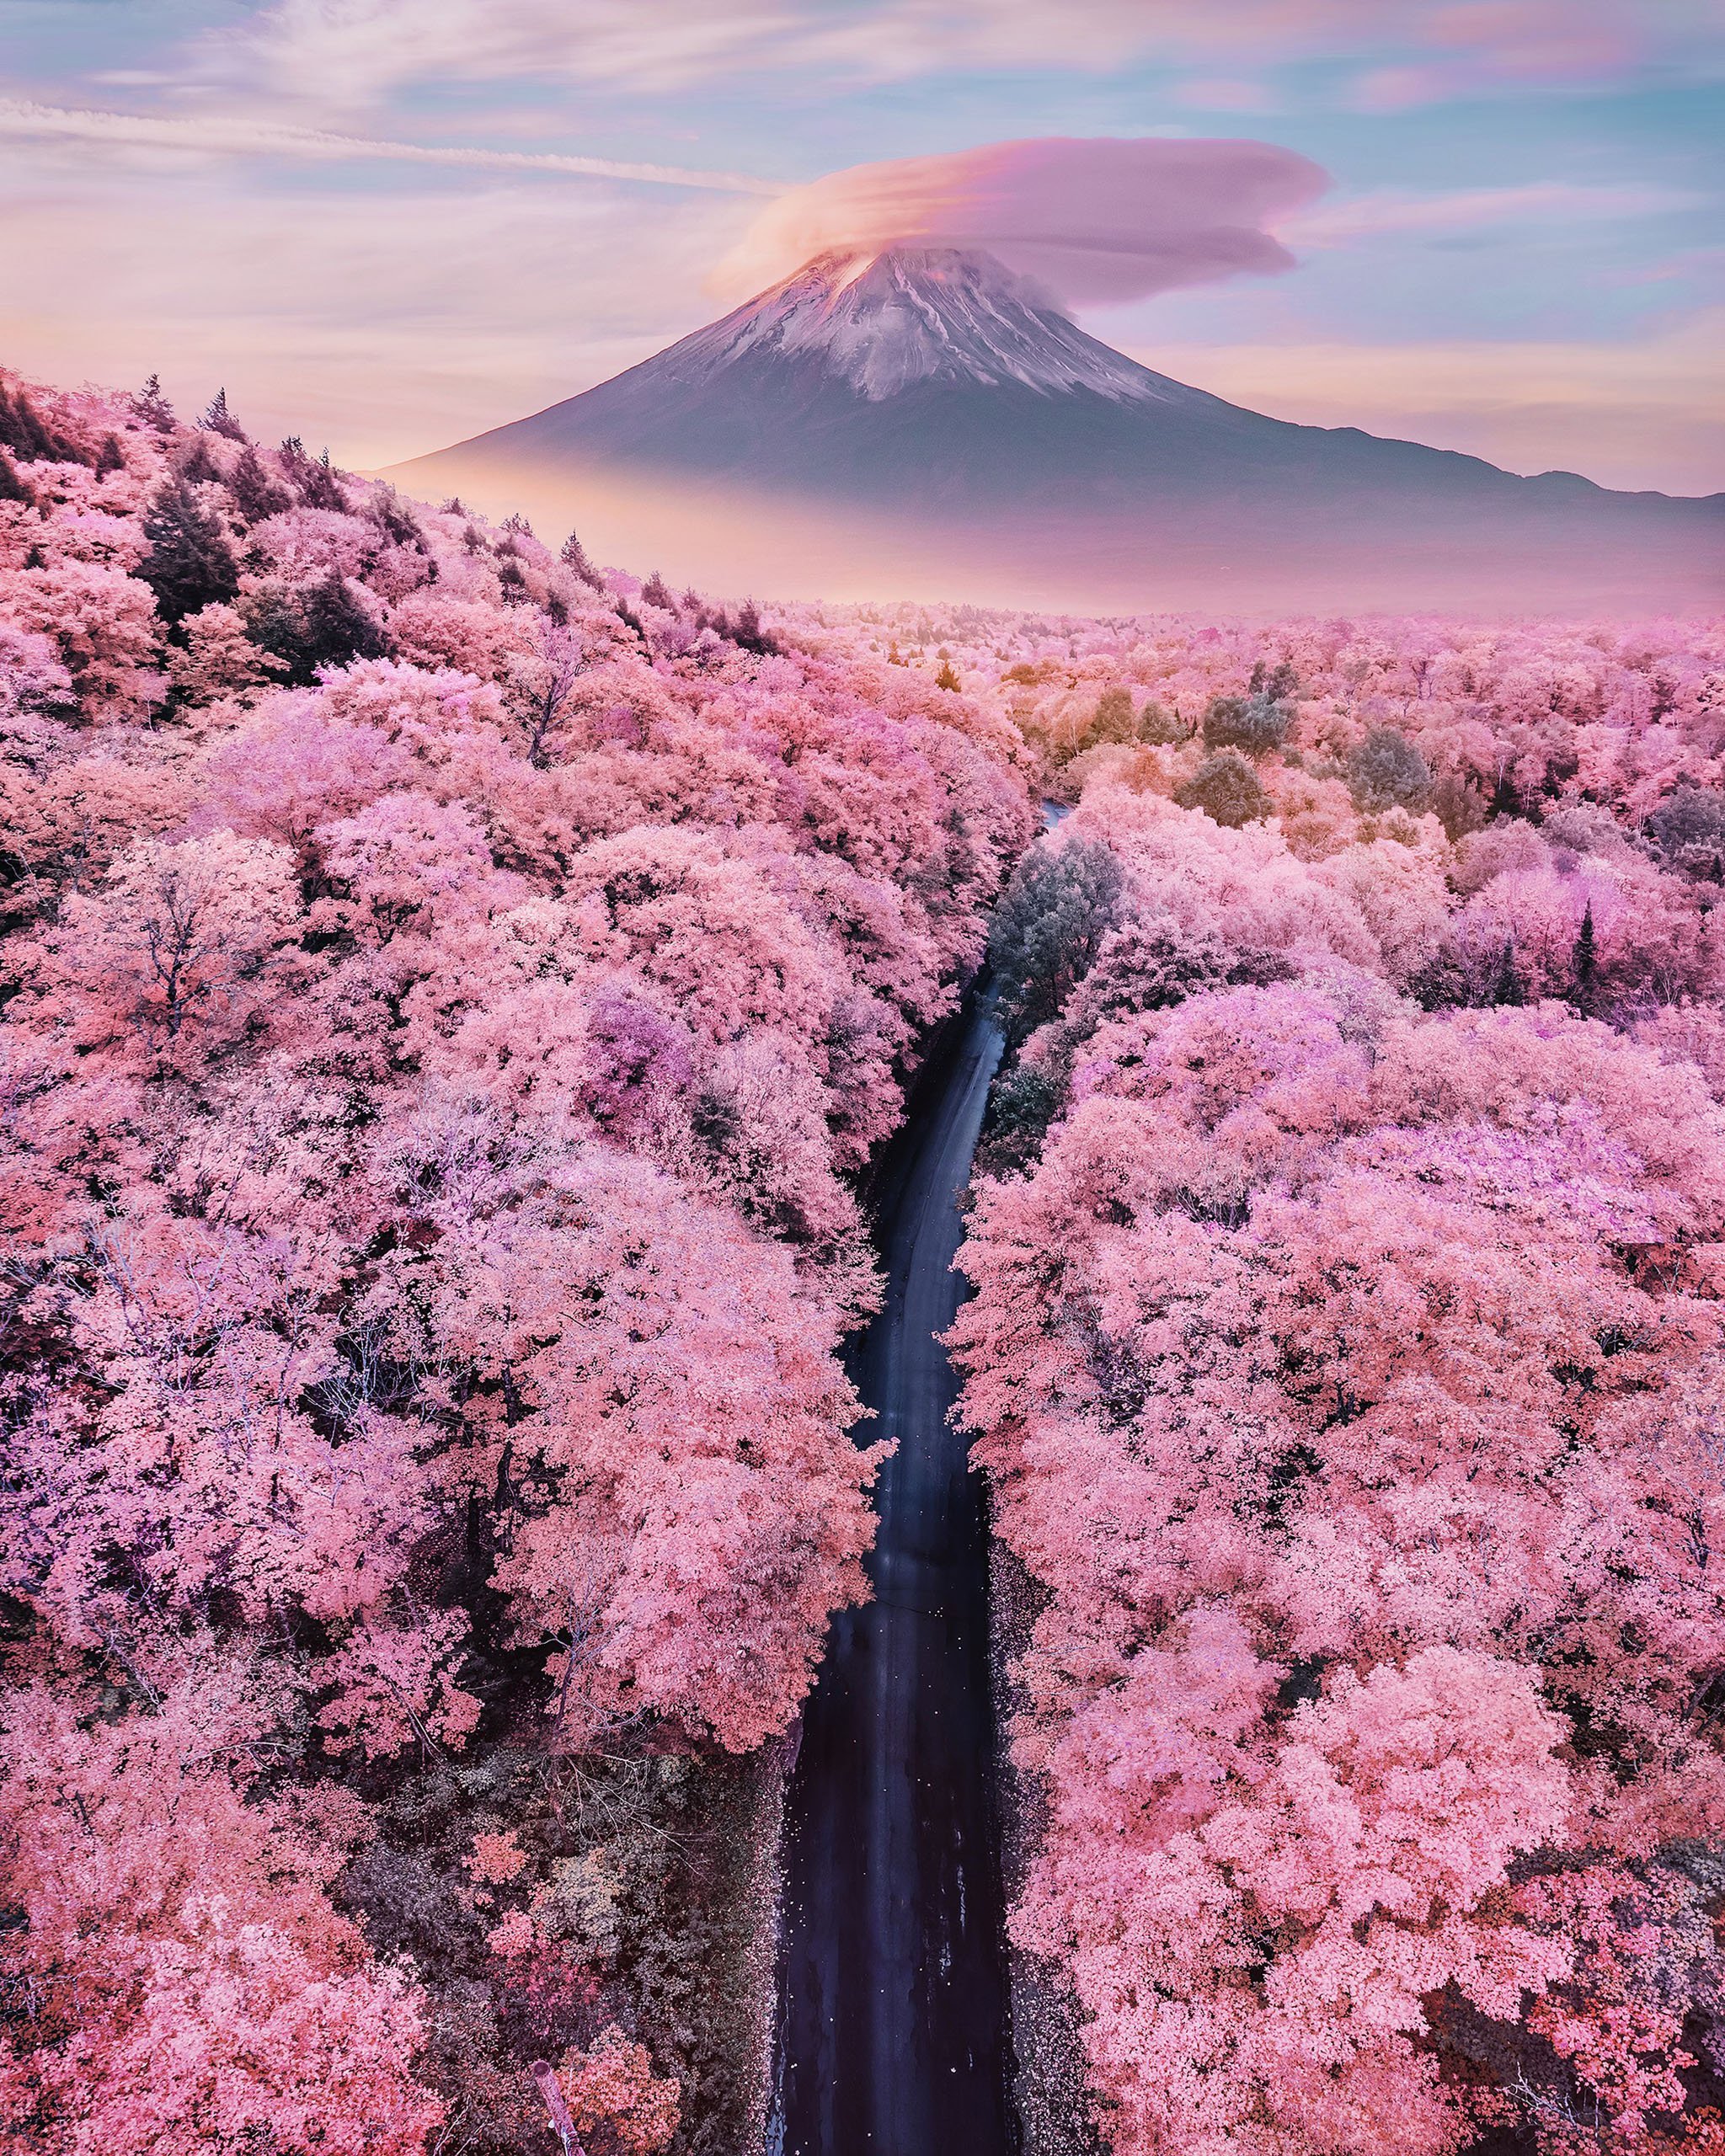 Nhật Bản: Nhật Bản là đất nước mang đến cho bạn những trải nghiệm đích thực về văn hóa, truyền thống và cảnh quan thiên nhiên tuyệt đẹp. Với những hình ảnh sống động của Nhật Bản, bạn sẽ được khám phá các nét đặc trưng và những cảnh đẹp của đất nước này. Hãy thưởng thức và tận hưởng những hình ảnh tuyệt vời về Nhật Bản.